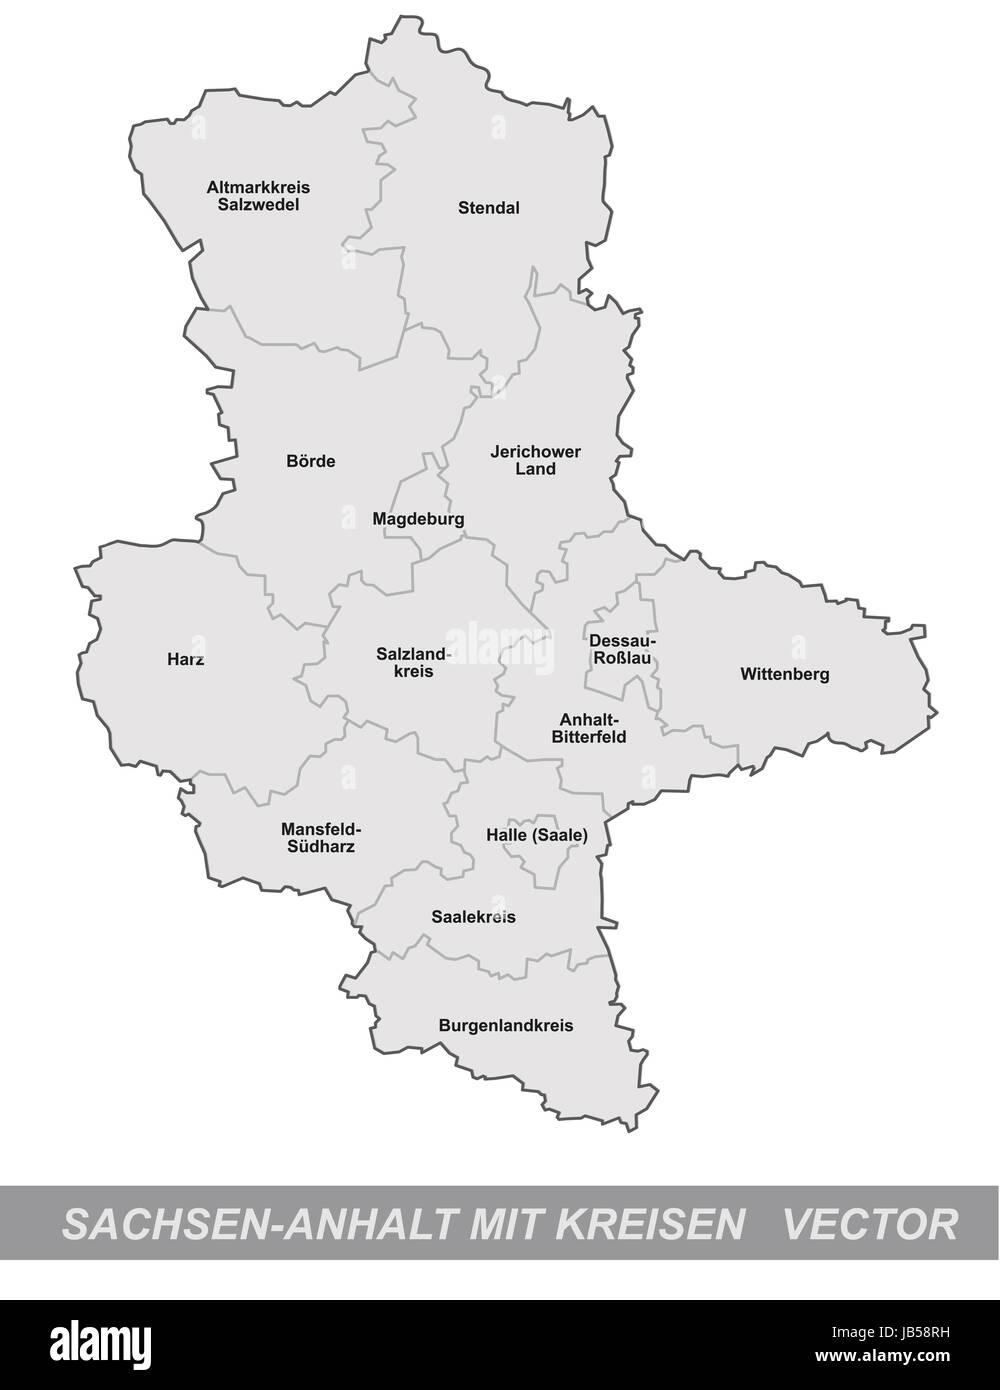 Sachsen-Anhalt in Deutschland als Inselkarte mit Grenzen in Grau. Durch die ansprechende Gestaltung fügt sich die Karte perfekt in Ihr Vorhaben ein. Stock Photo